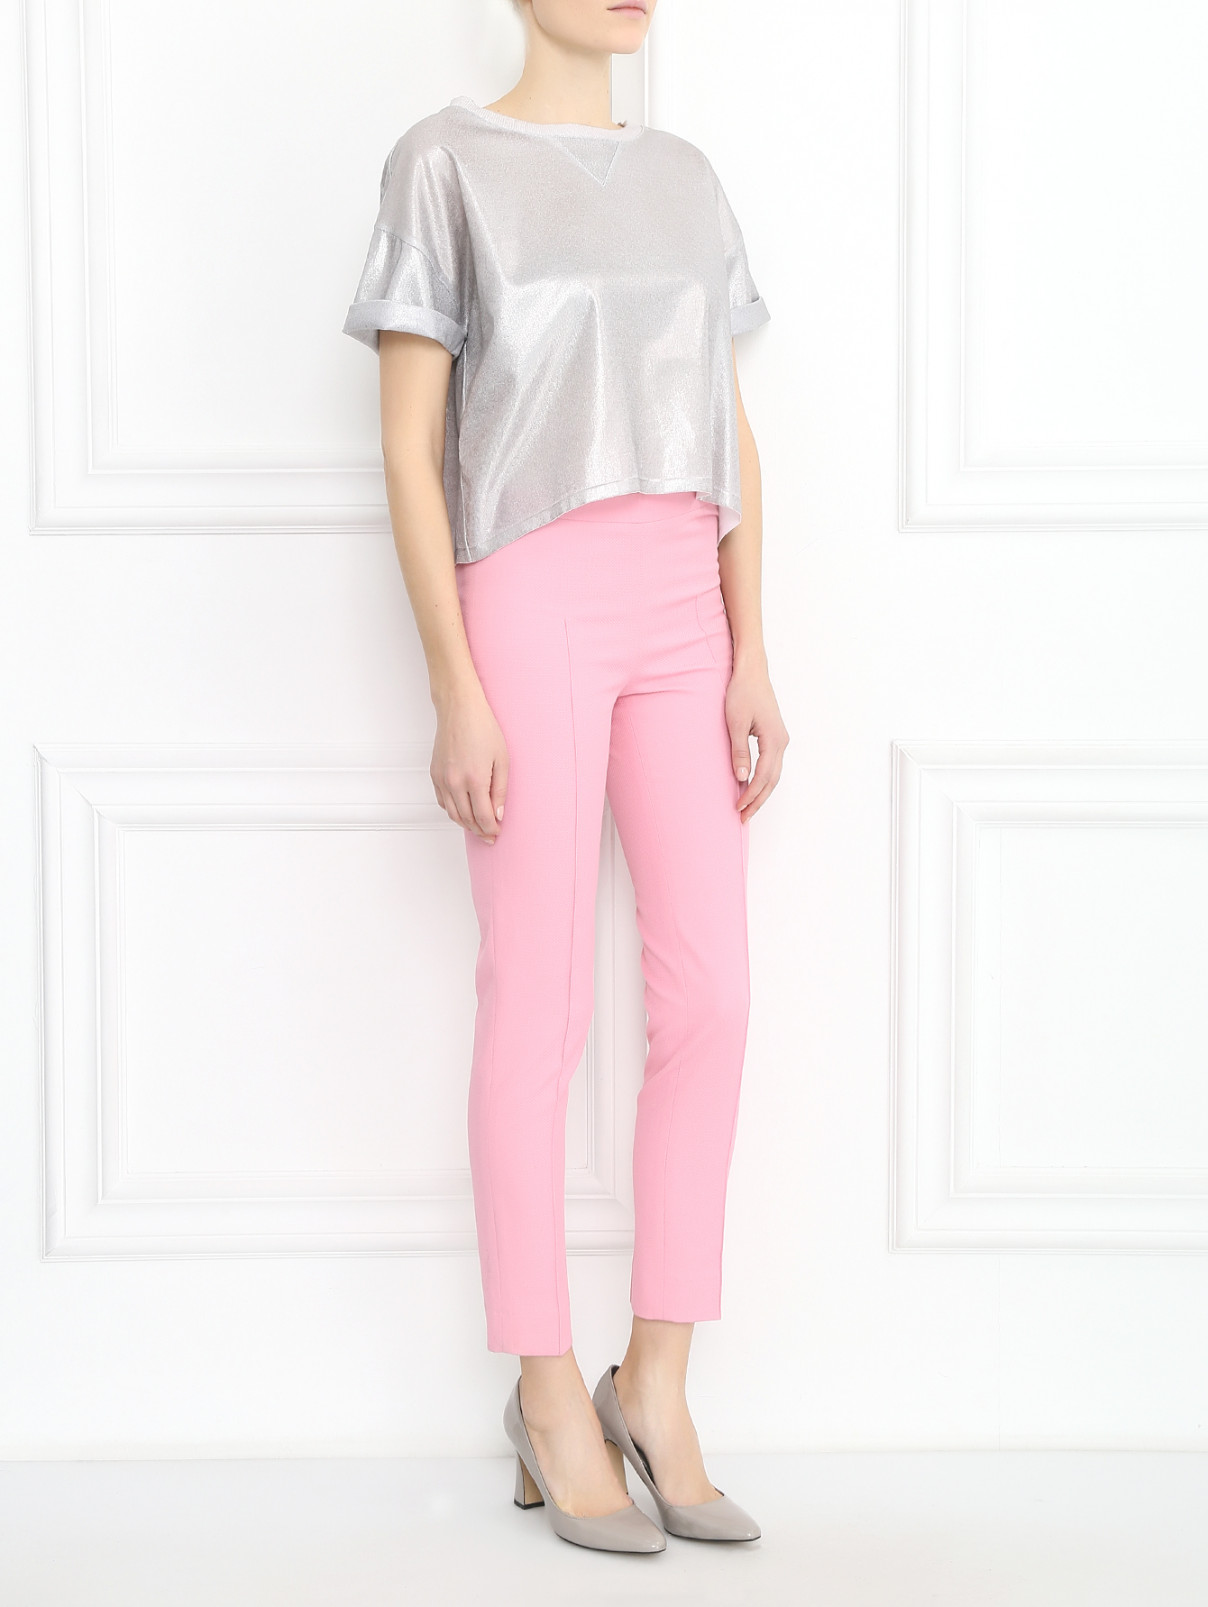 Укороченные брюки из хлопка Moschino Cheap&Chic  –  Модель Общий вид  – Цвет:  Розовый